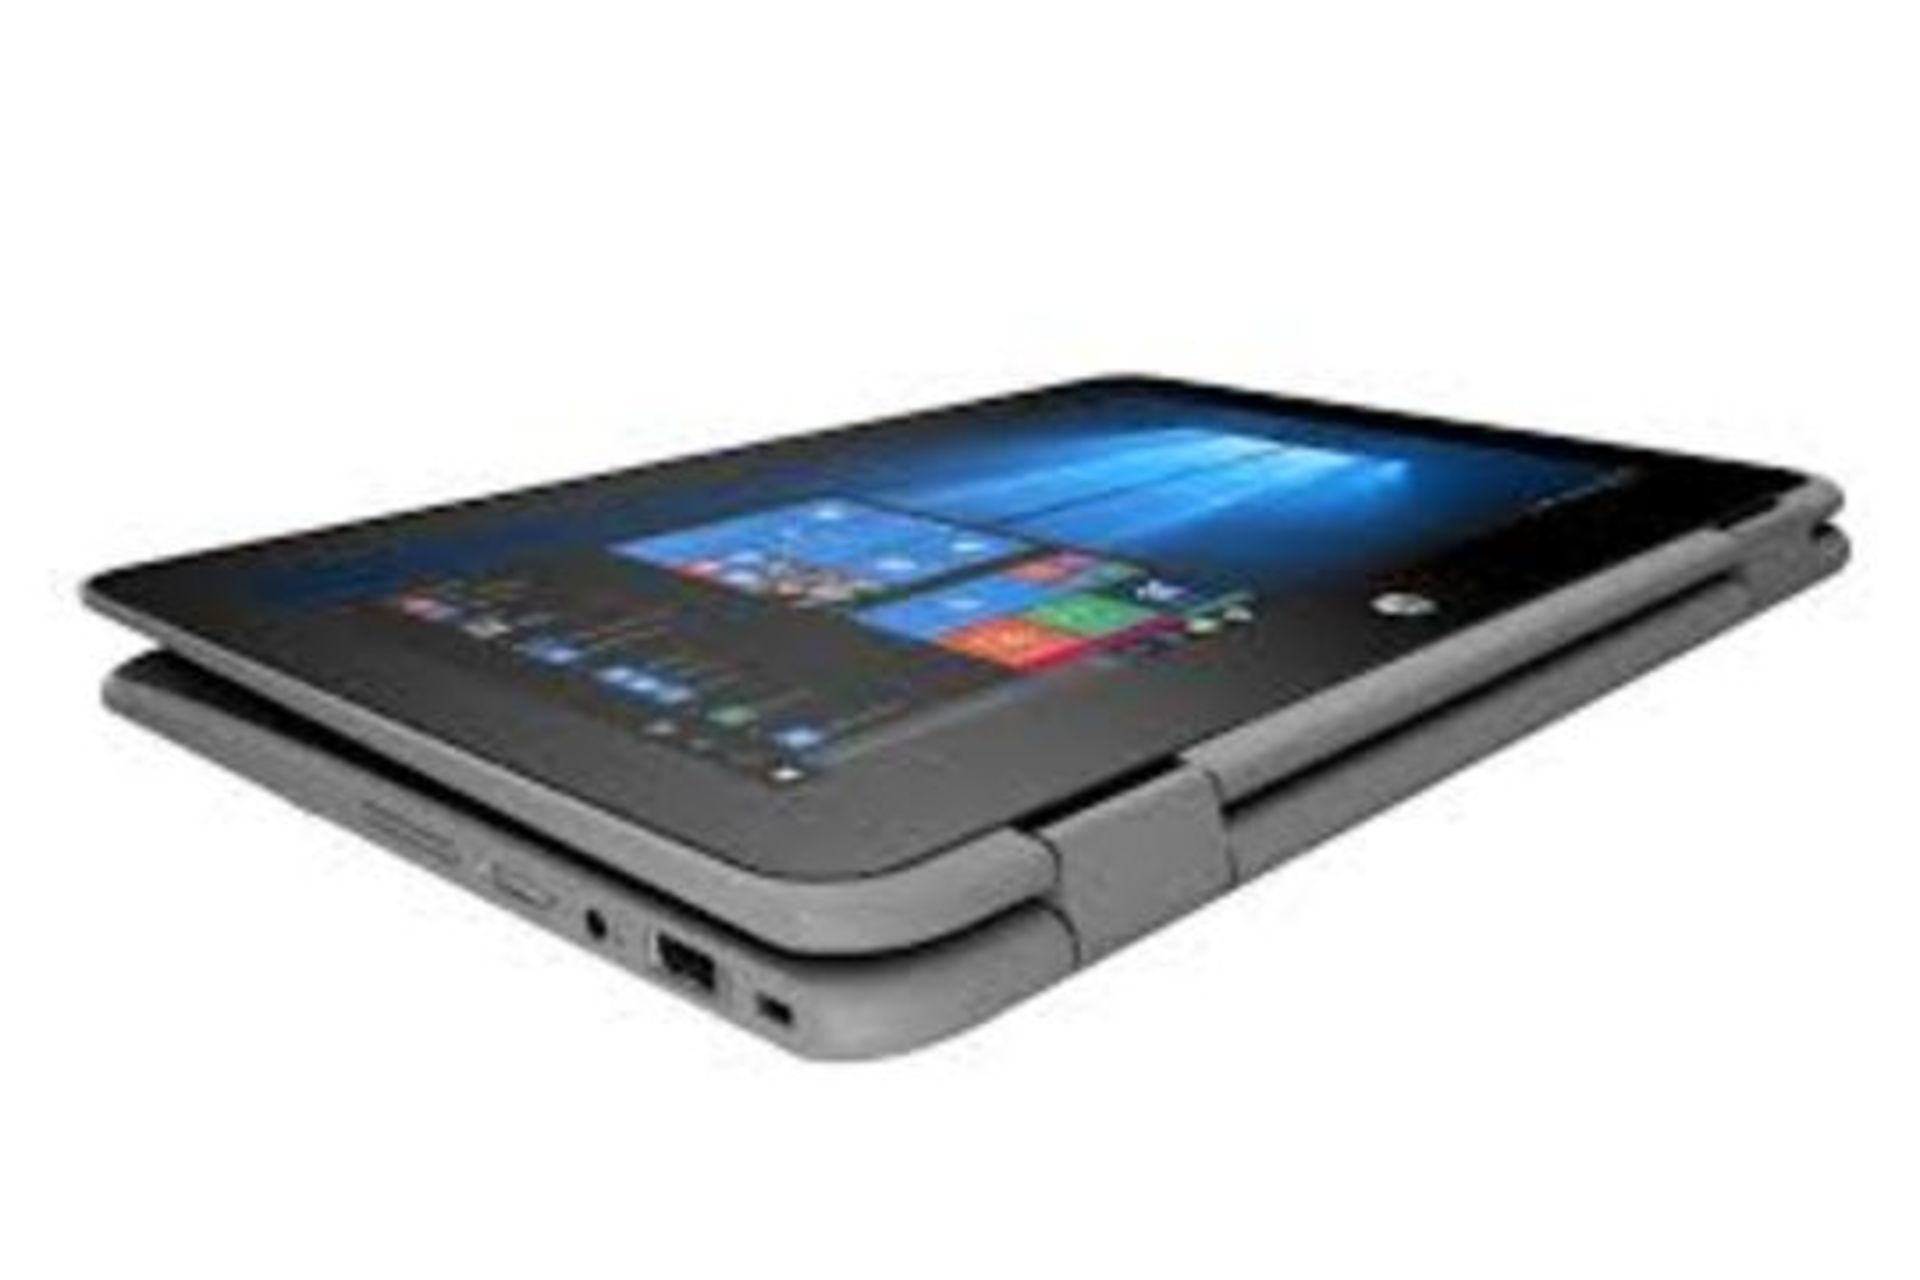 HP ProBook x360 11 G1 EE 2 IN 1 Laptop (Pentium Quad Core/4 GB/128 GB SSD) RRP £450. - Image 4 of 4